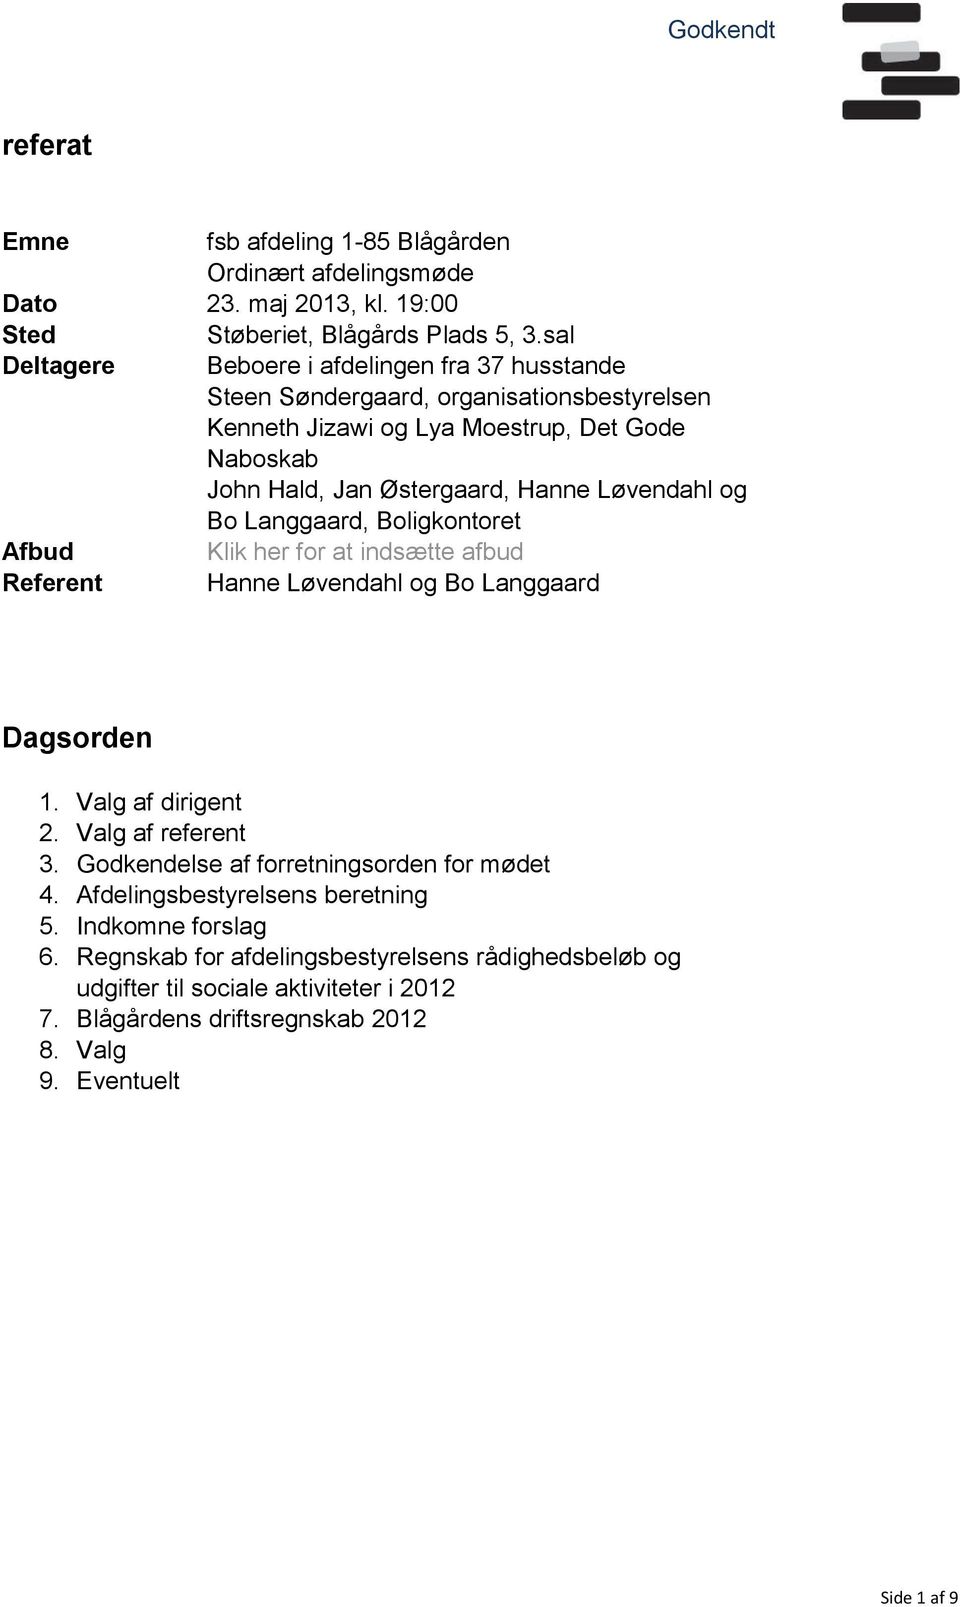 Langgaard, Boligkontoret Klik her for at indsætte afbud Hanne Løvendahl og Bo Langgaard Dagsorden 1. Valg af dirigent 2. Valg af referent 3. Godkendelse af forretningsorden for mødet 4.